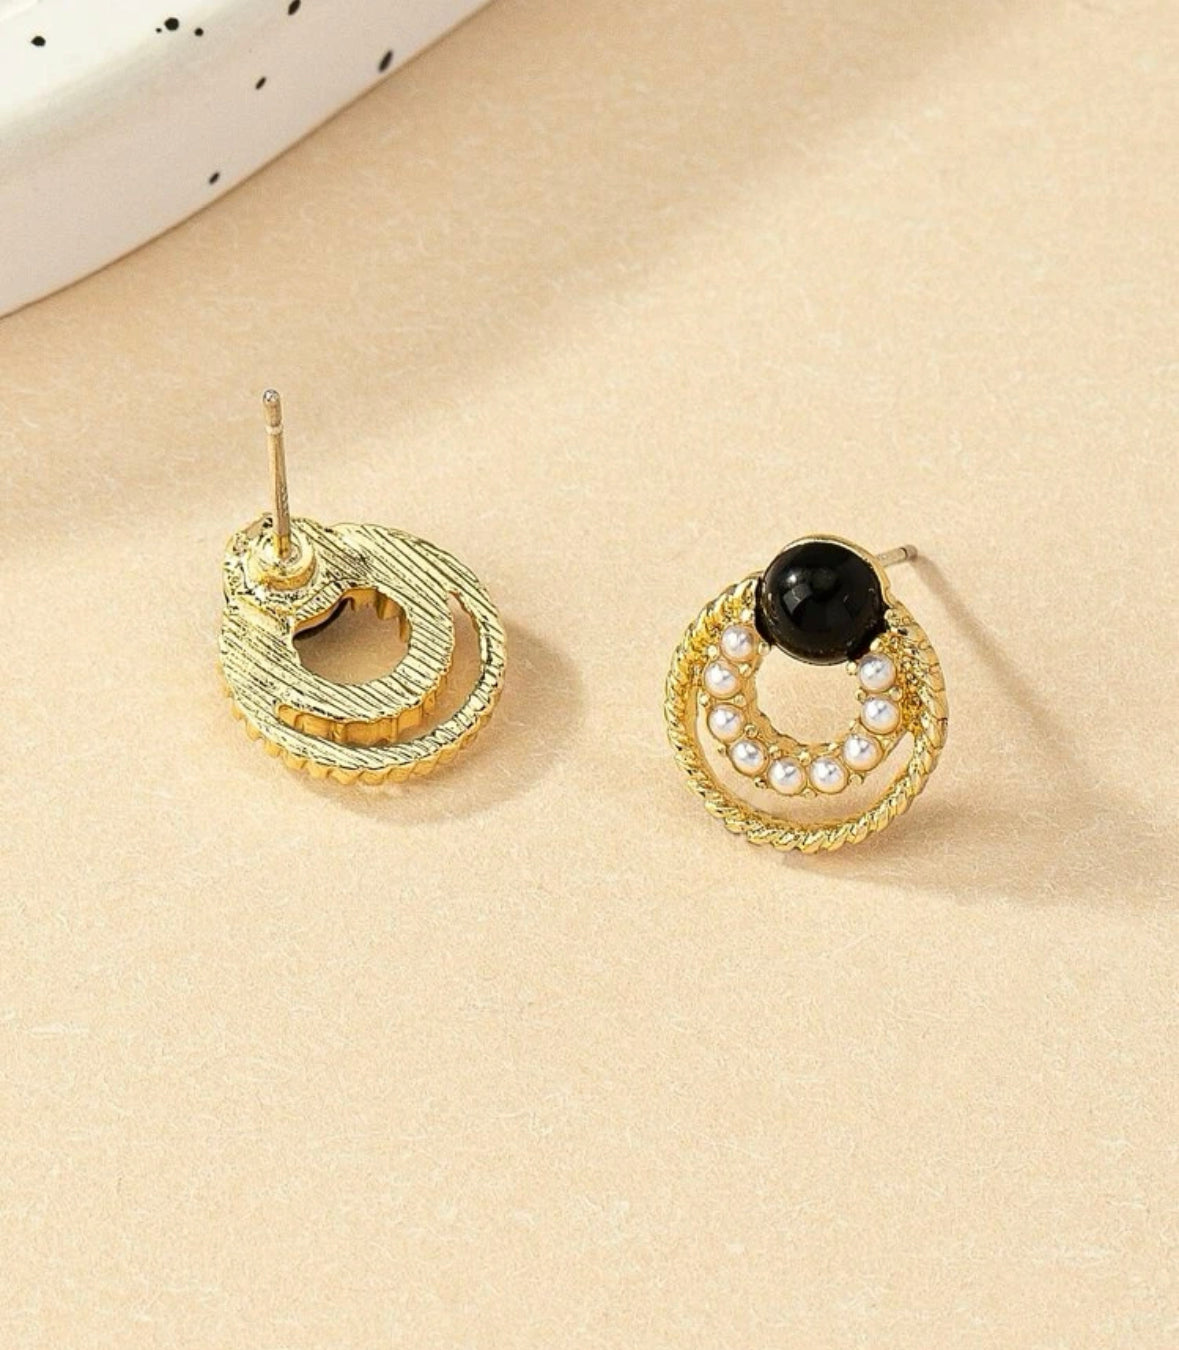 Simple and elegant pearl stud earrings